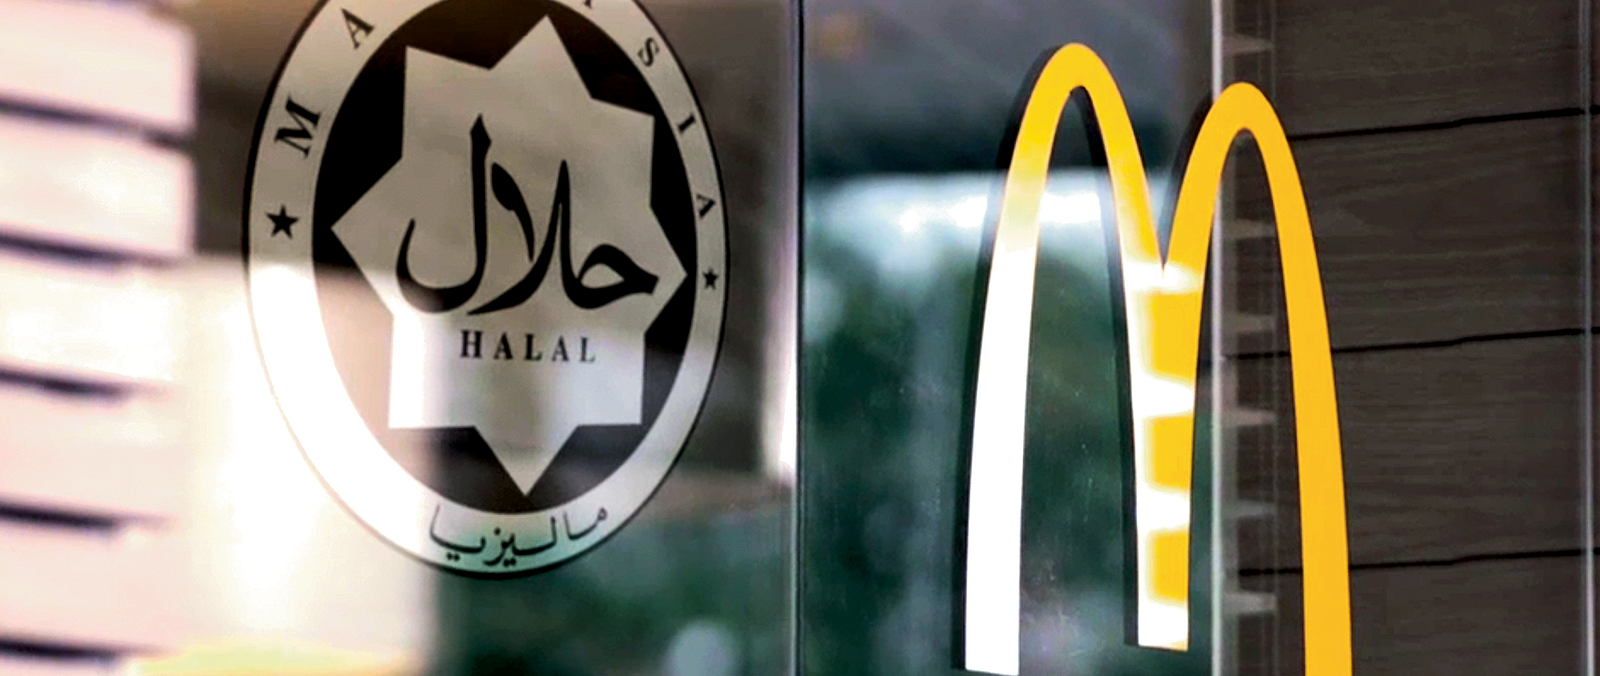 McDonald's Malaysia McDonald's® Malaysia 100 Halal